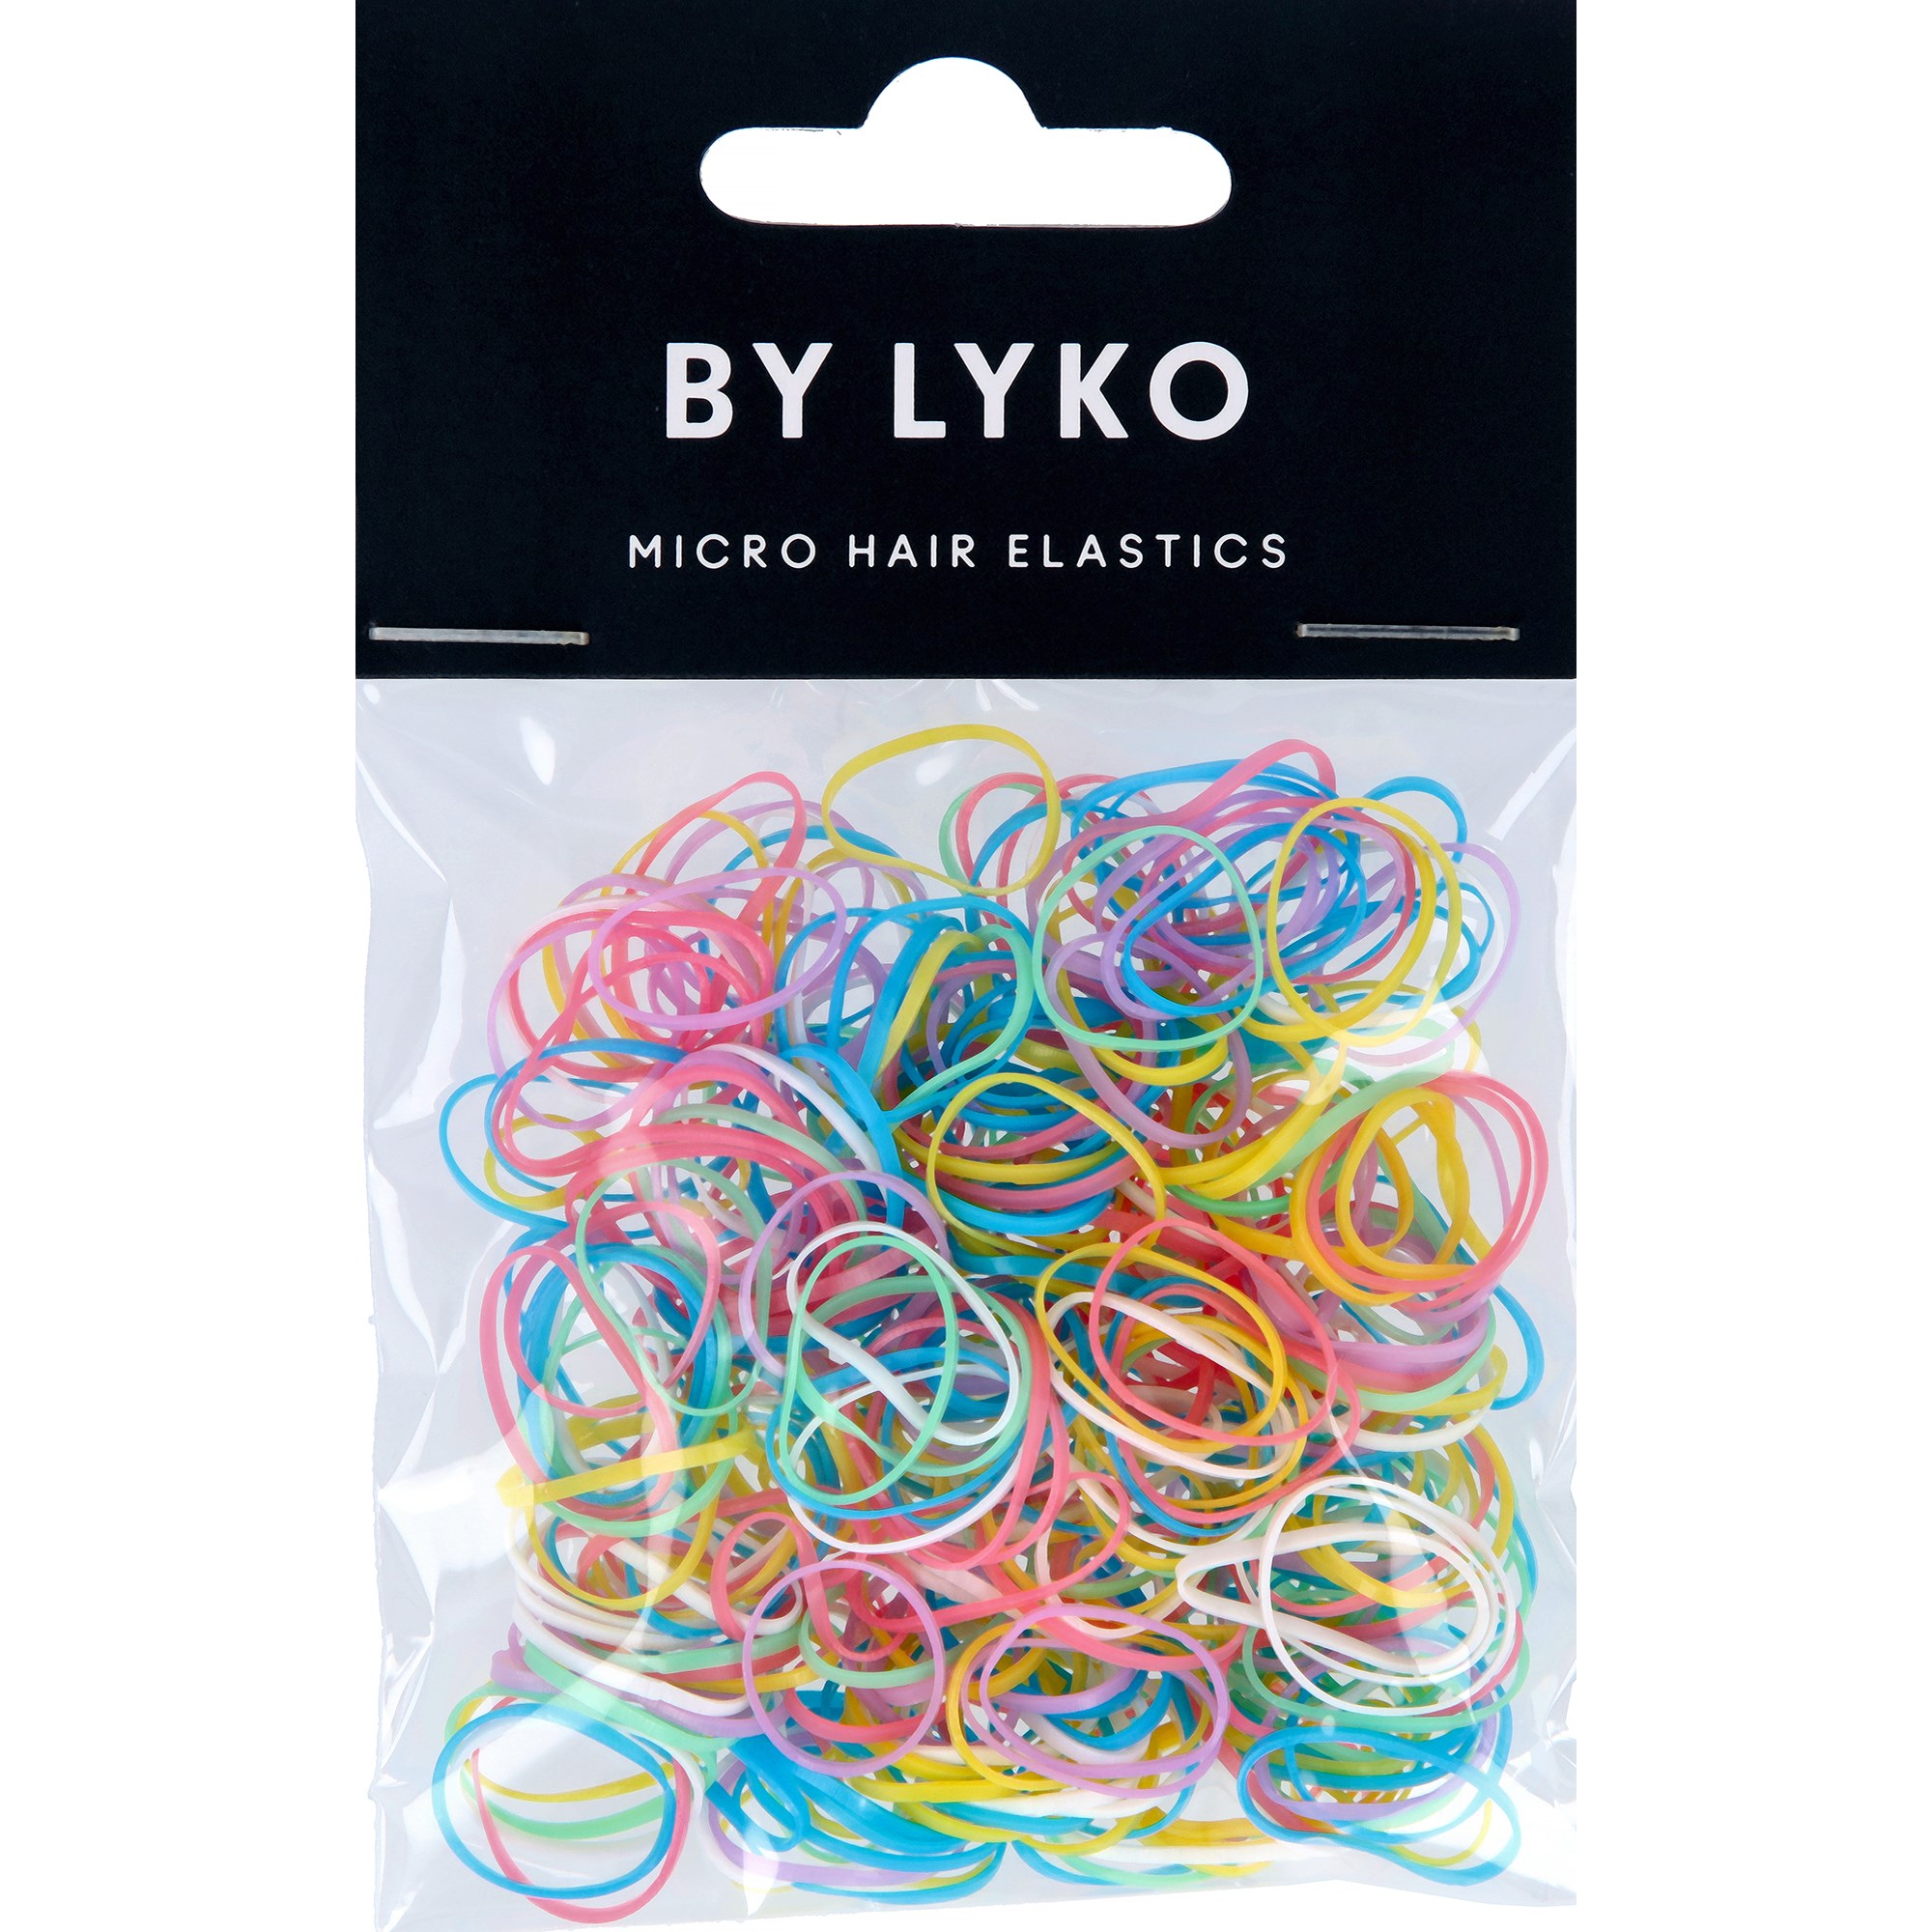 By Lyko Mini Hair Elastics Colourful 250 Pack